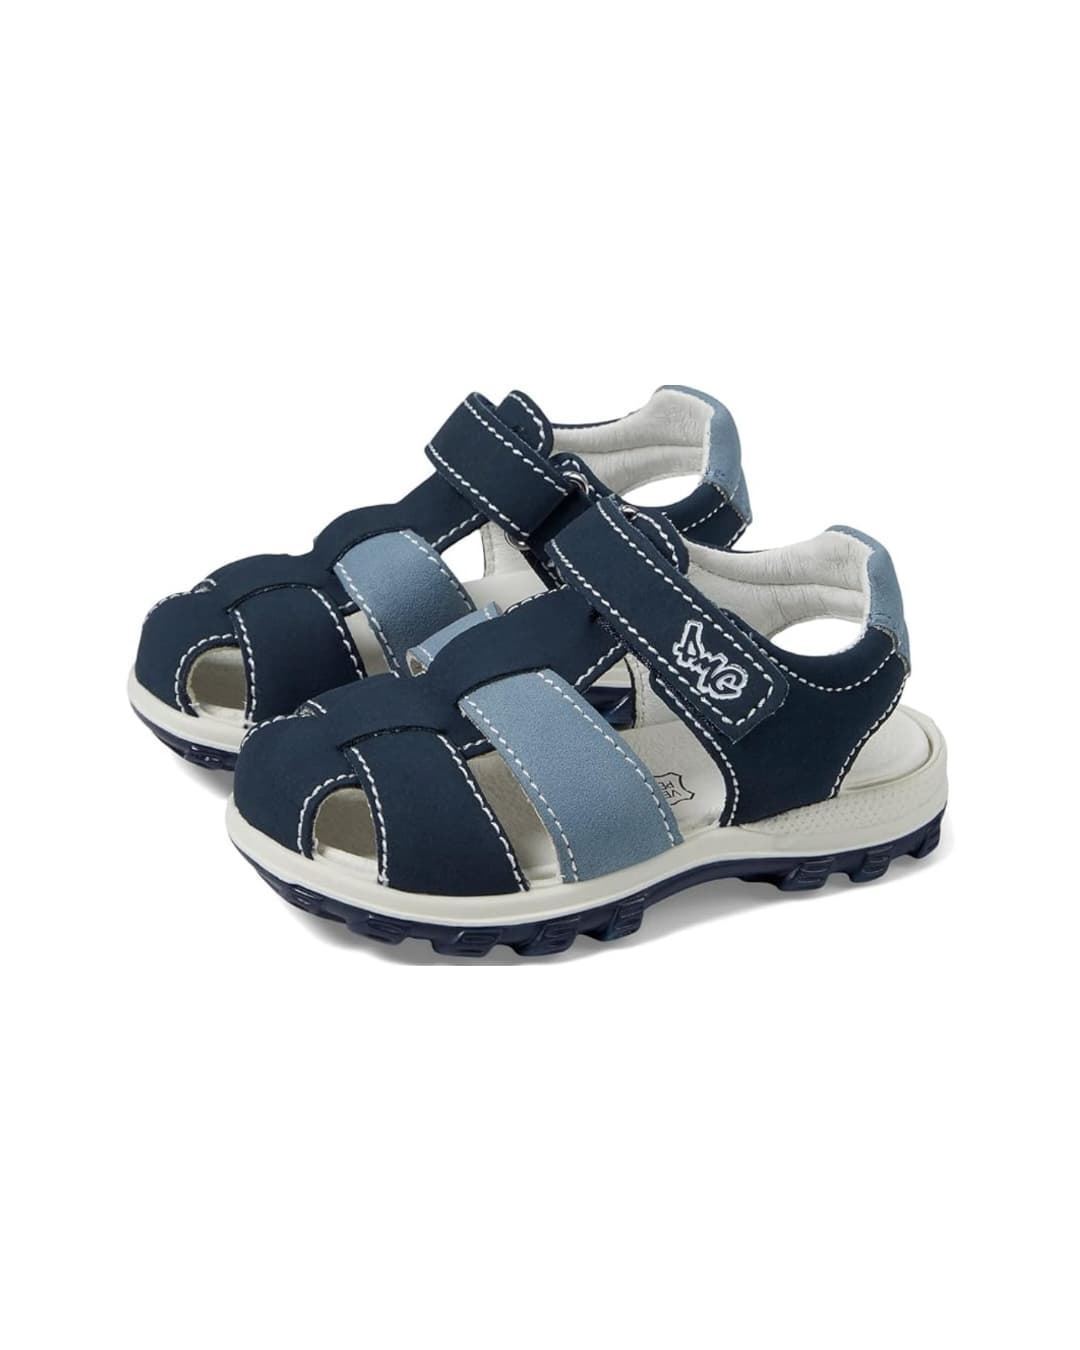 Primigi Sandals for children Navy Blue - Image 2